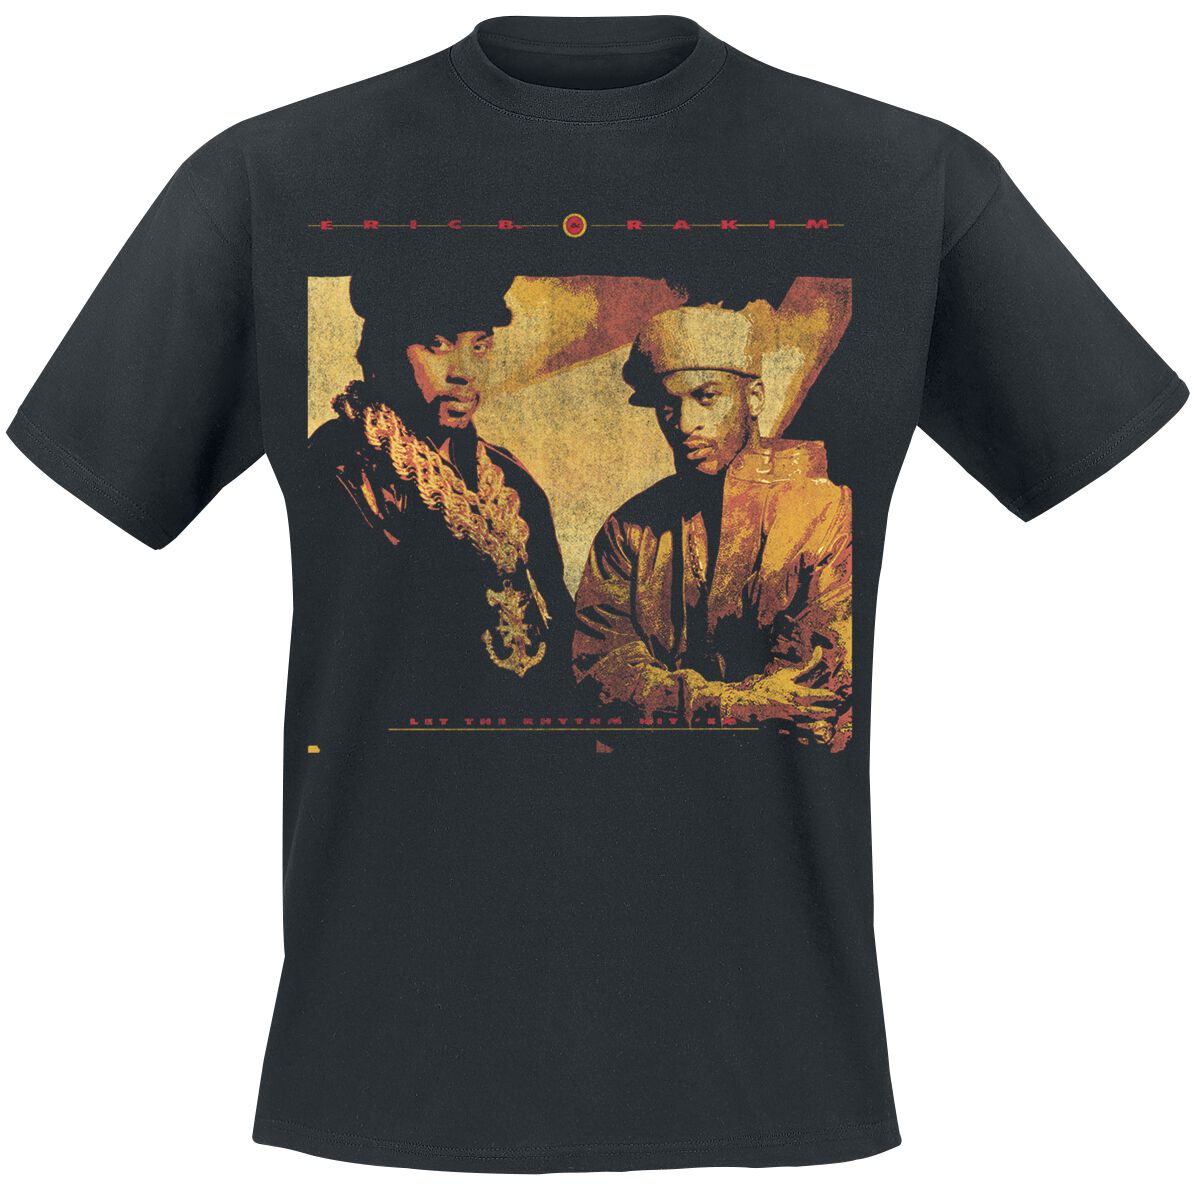 Eric B. & Rakim T-Shirt - Rhythm Hit Em - S bis 3XL - für Männer - Größe L - schwarz  - Lizenziertes Merchandise! von Eric B. & Rakim